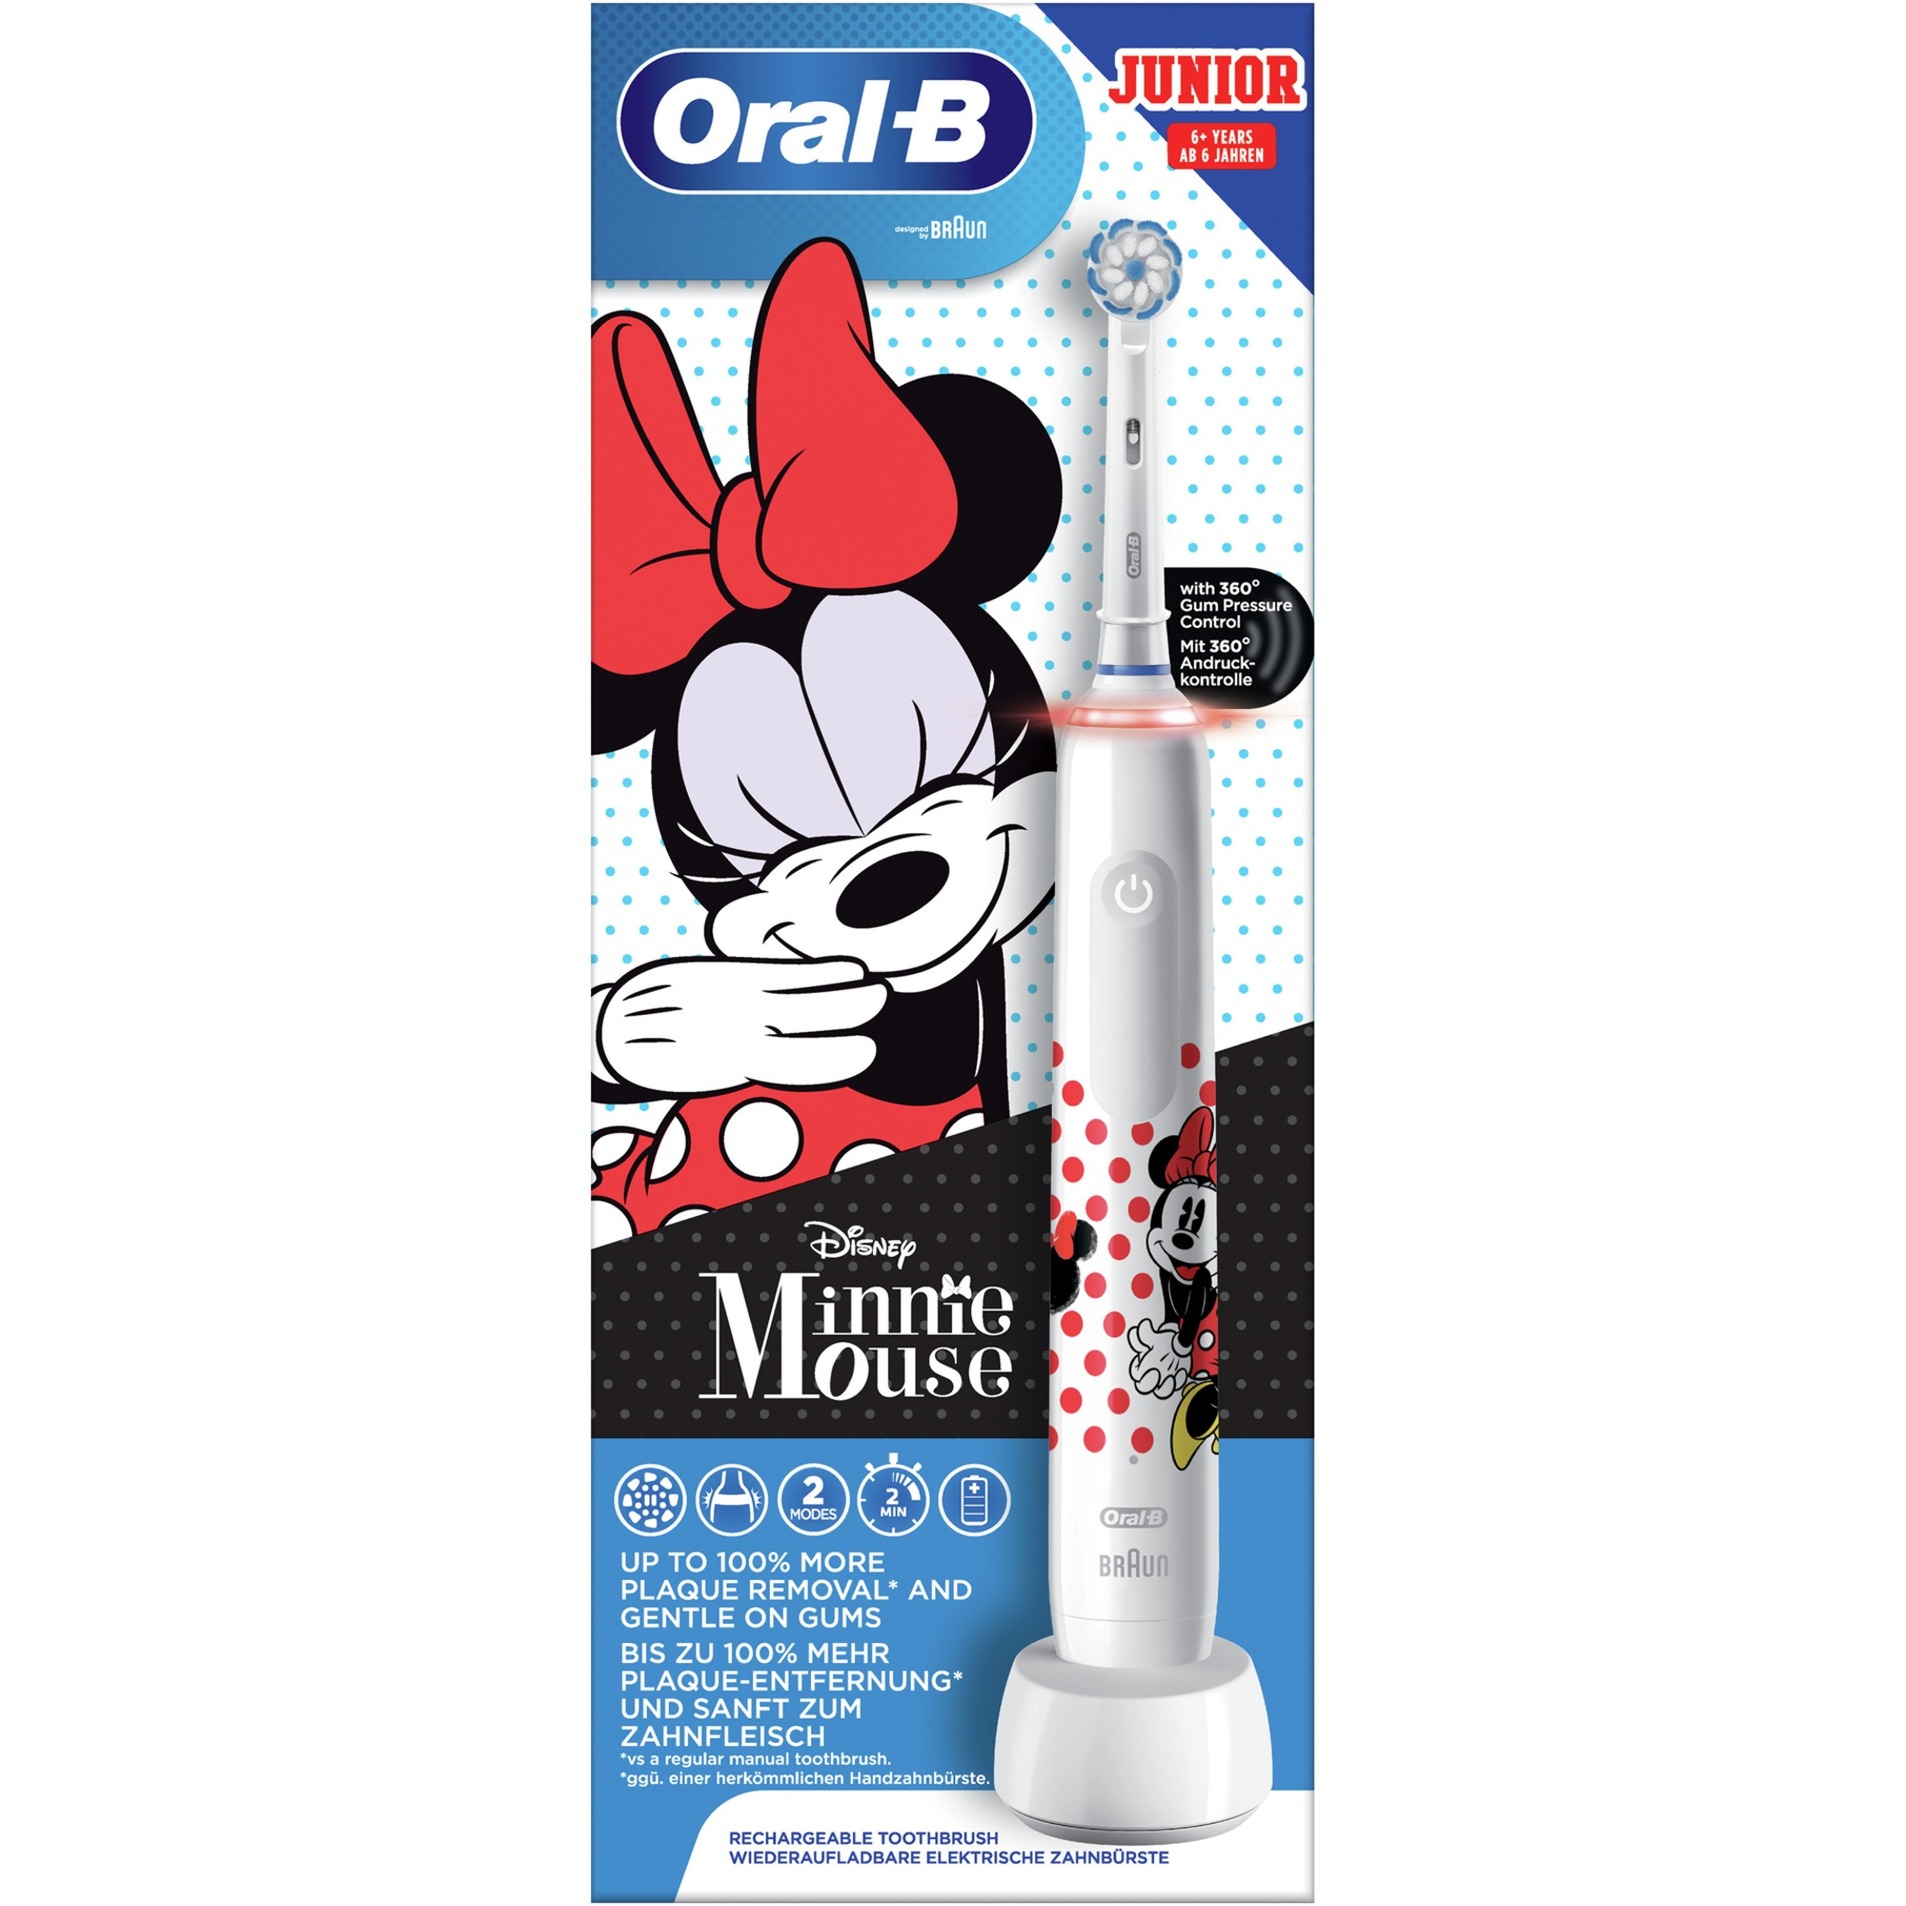 Image of Alternate - Oral-B Junior Minnie Mouse, Elektrische Zahnbürste online einkaufen bei Alternate